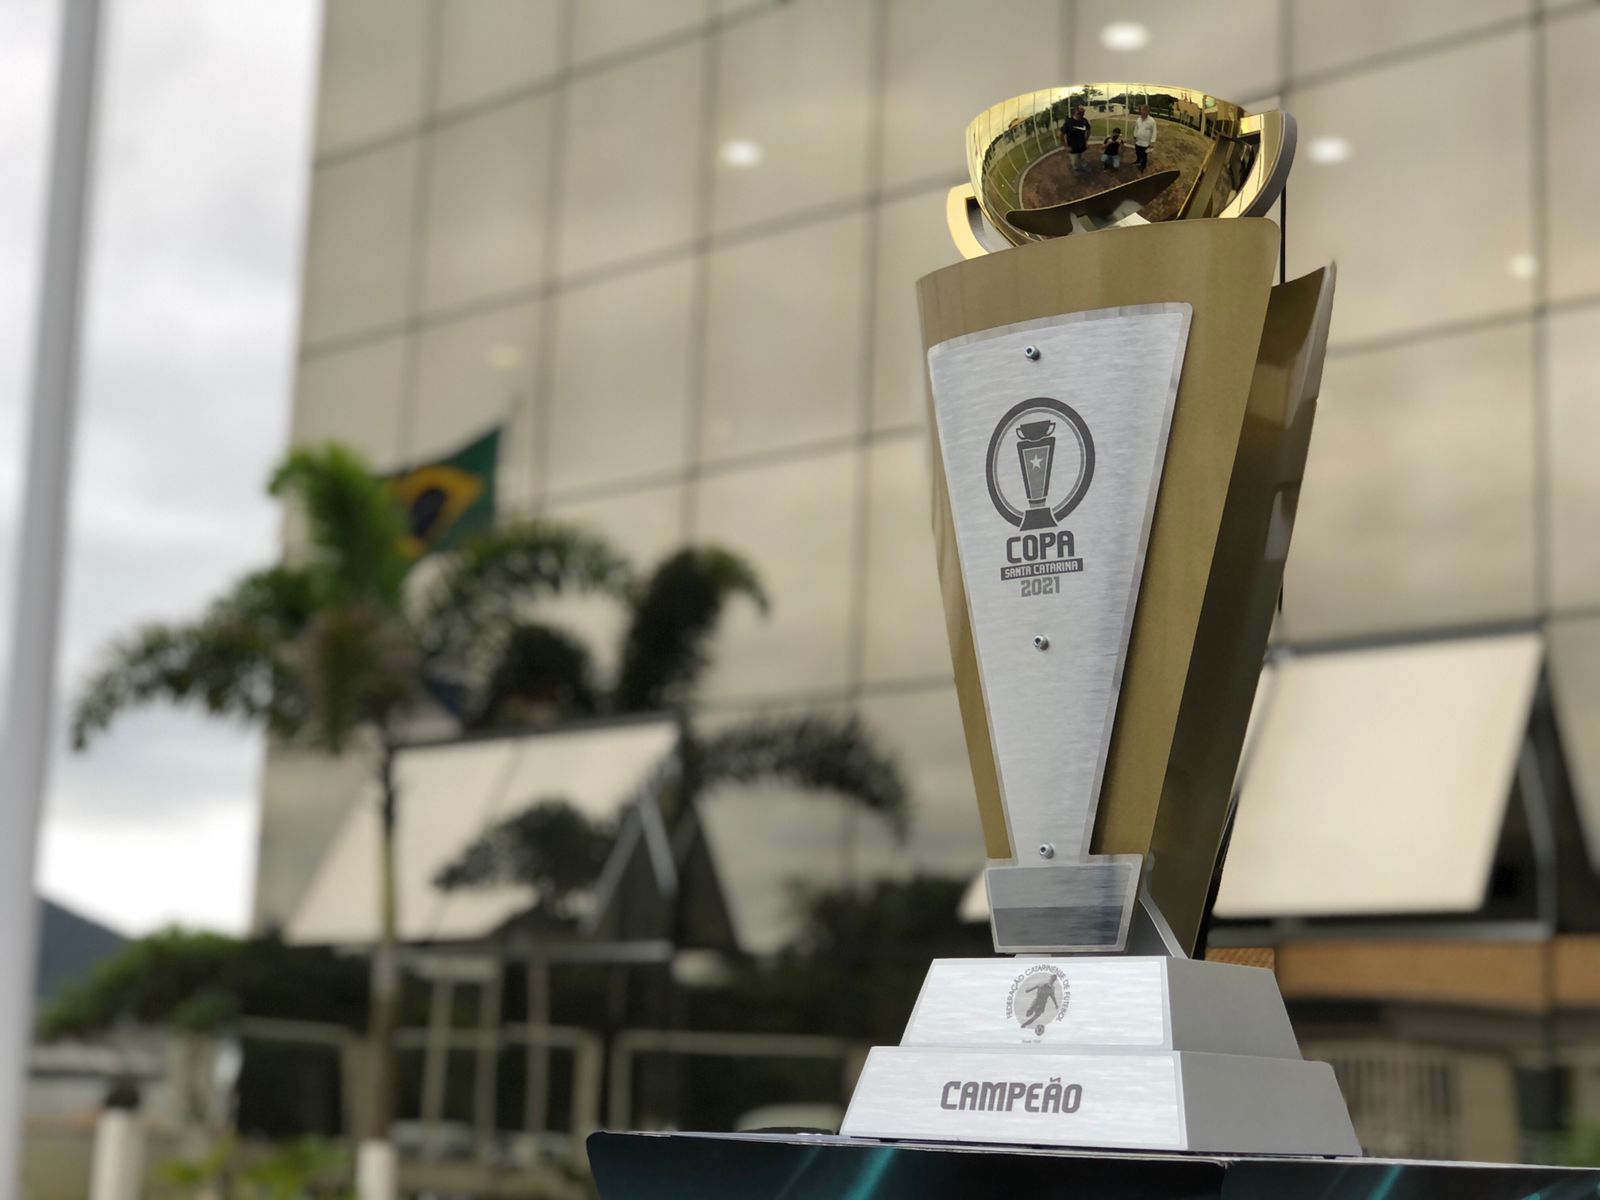 Tubarão é campeão da Copa Santa Catarina e está na Copa do Brasil de 2018